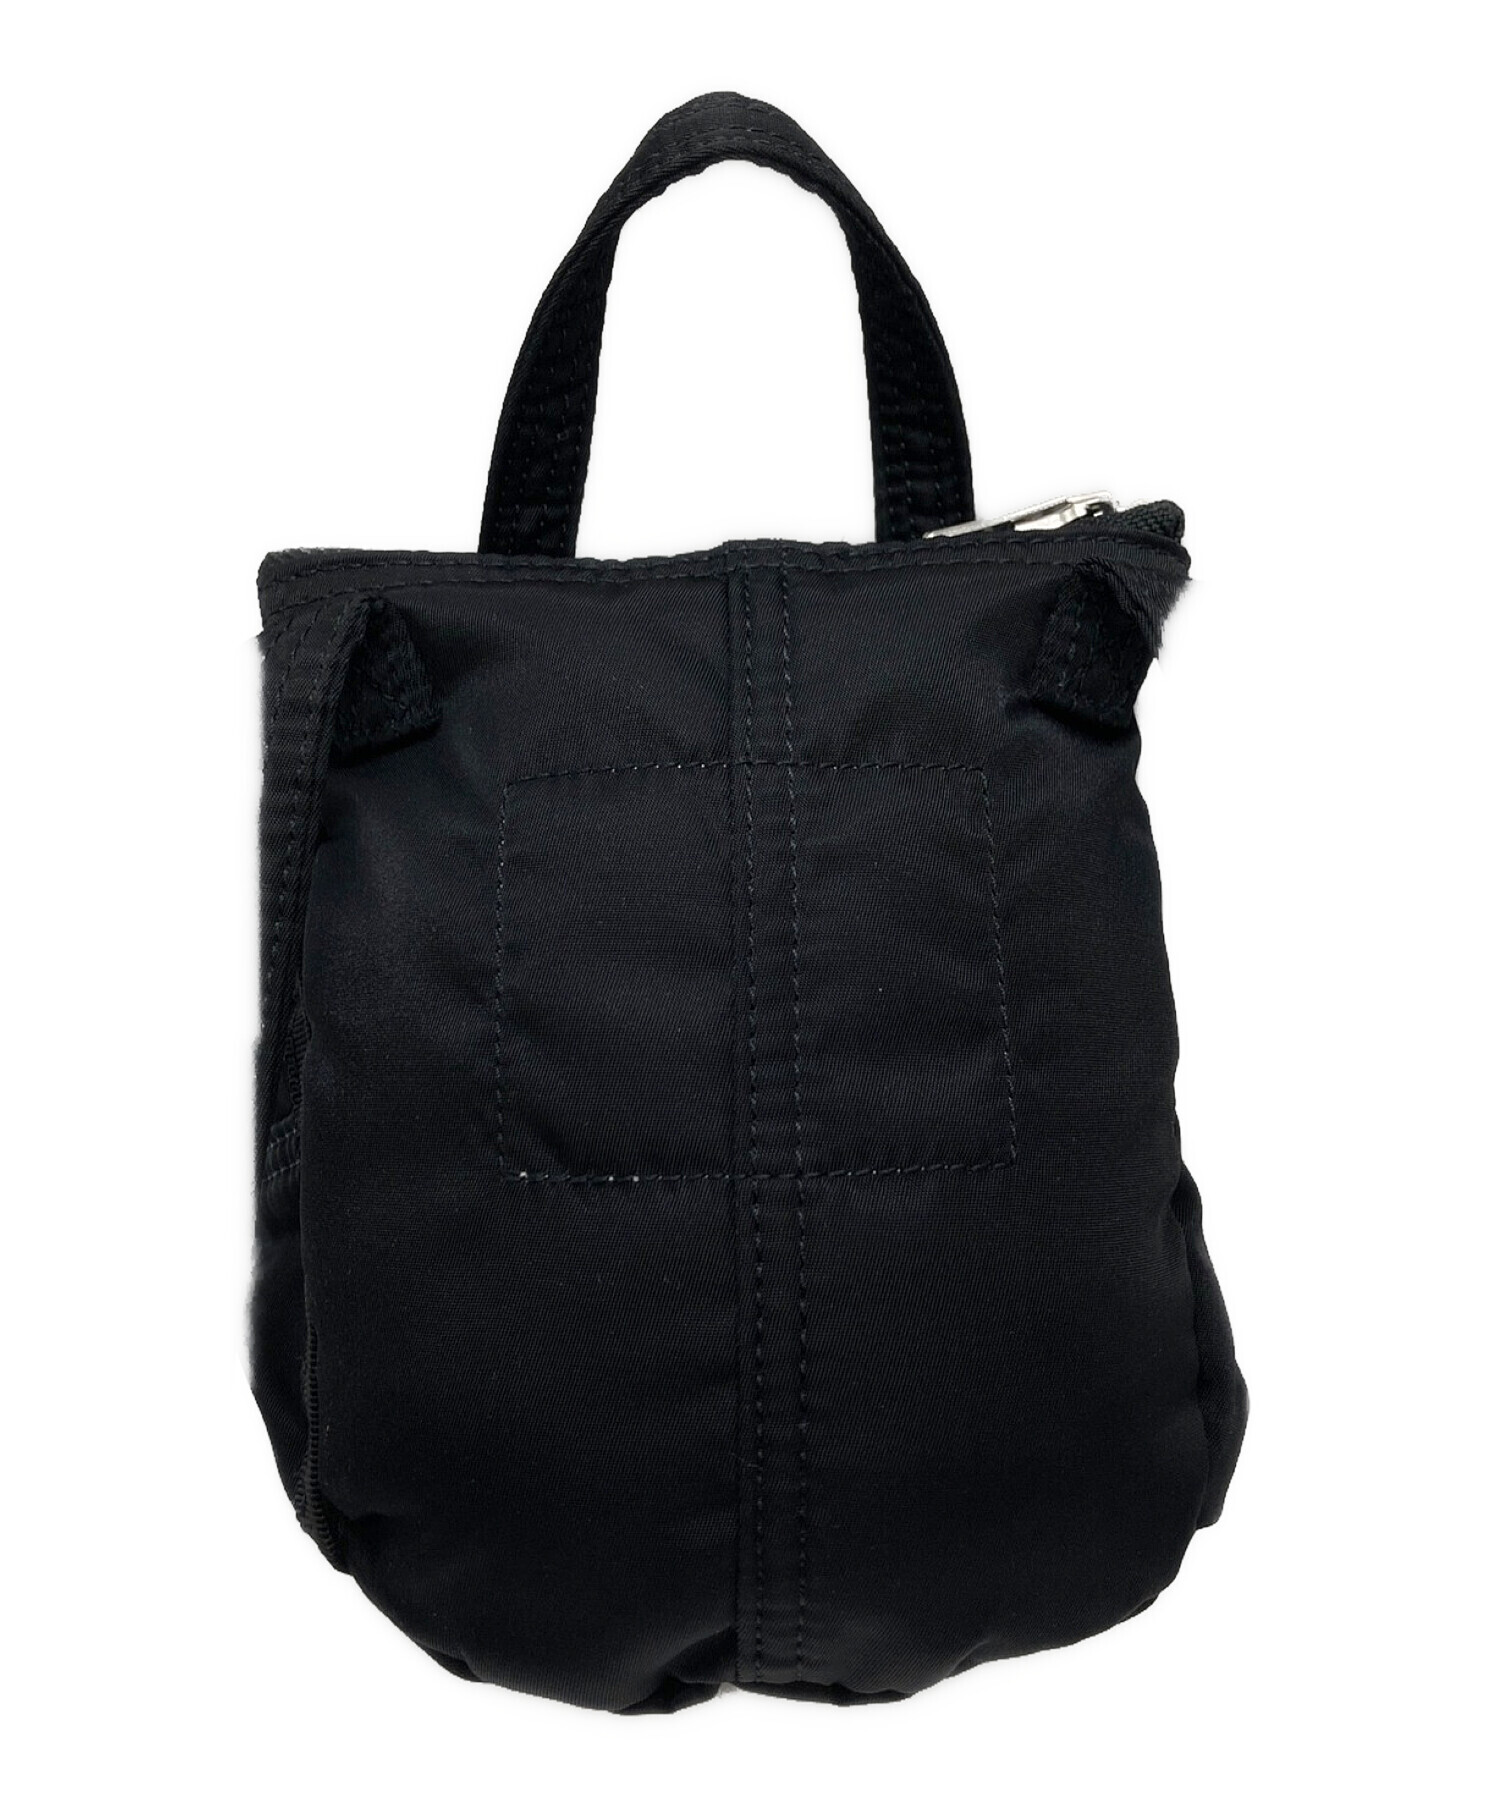 PORTER (ポーター) sacai (サカイ) Pocket Bag Small ブラック サイズ:なし